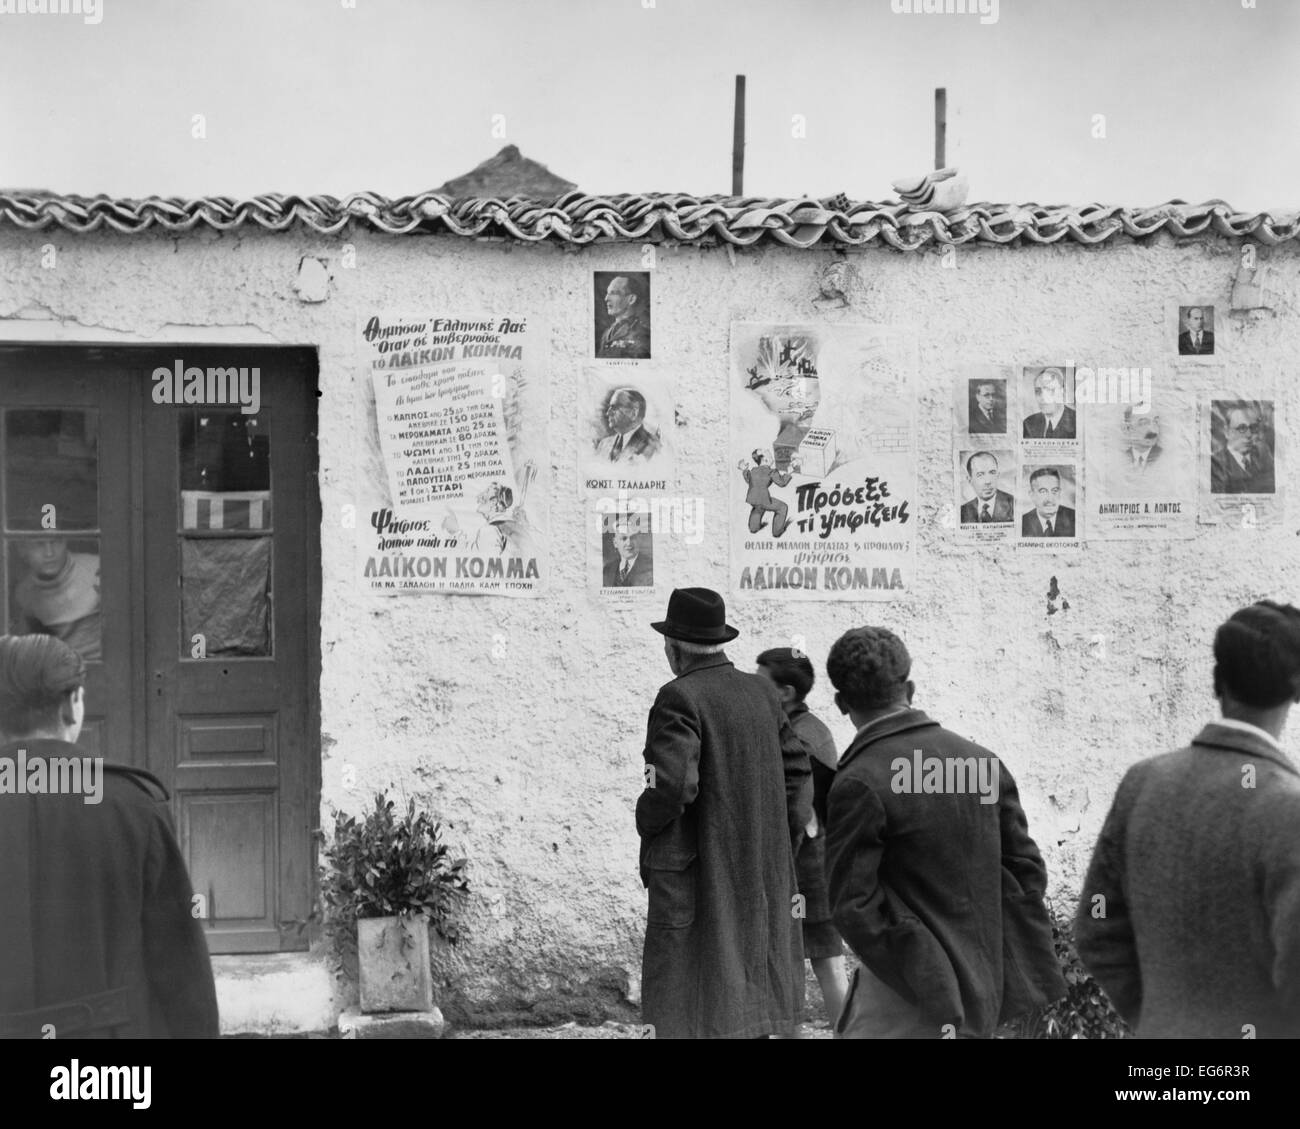 Carteles políticos monárquicos enyesado en la pared exterior de una taberna. Atenas, Grecia, 31 de marzo de 1946. - (BSLOC 2014 15 222) Foto de stock